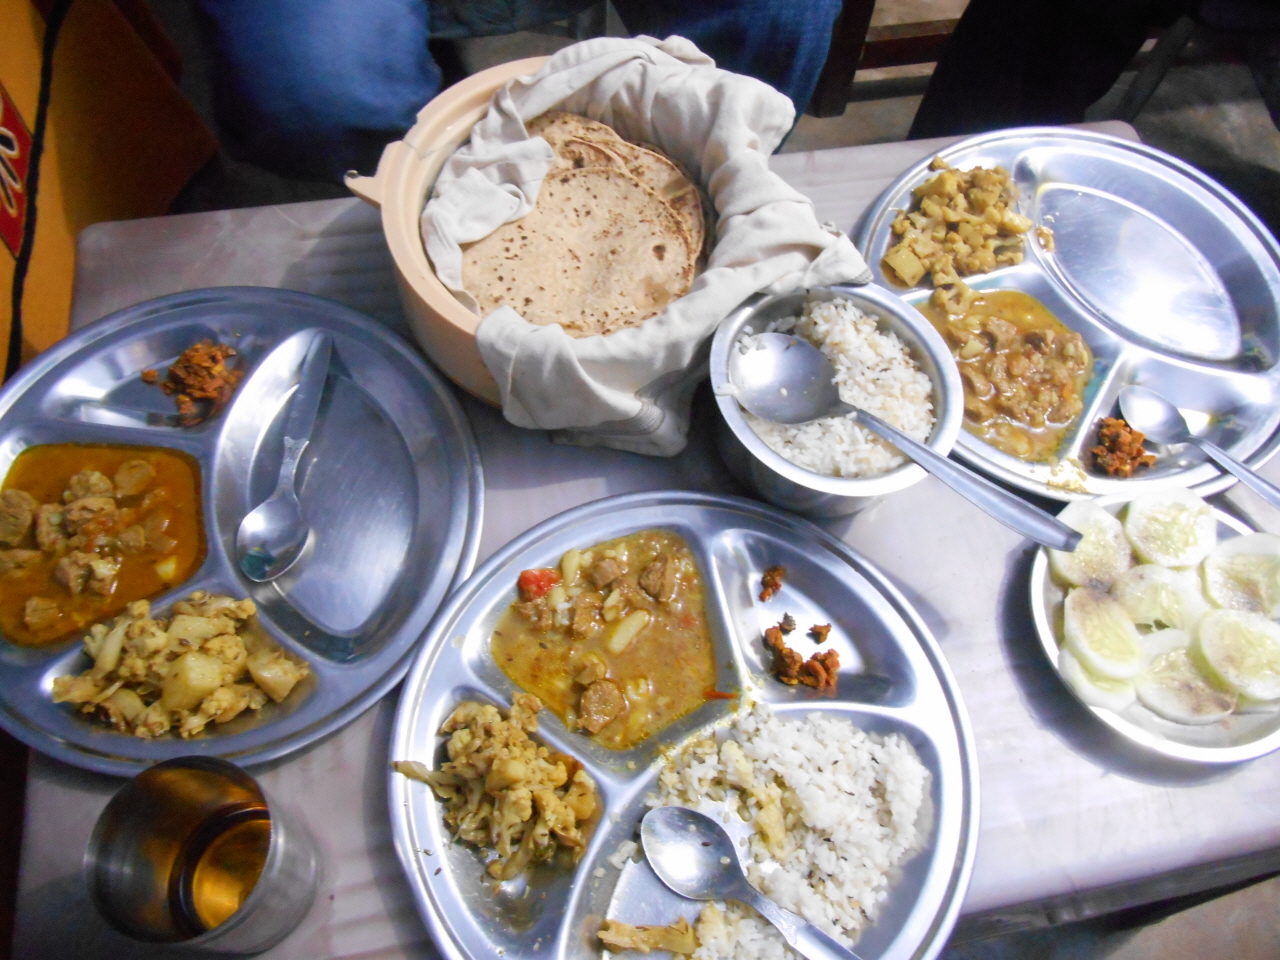 부럼씨의 아내인 래카 라인씨가 준비한 인도 전통 음식. 인도에서 먹어본 음식 중에 가장 맛이 있었다.